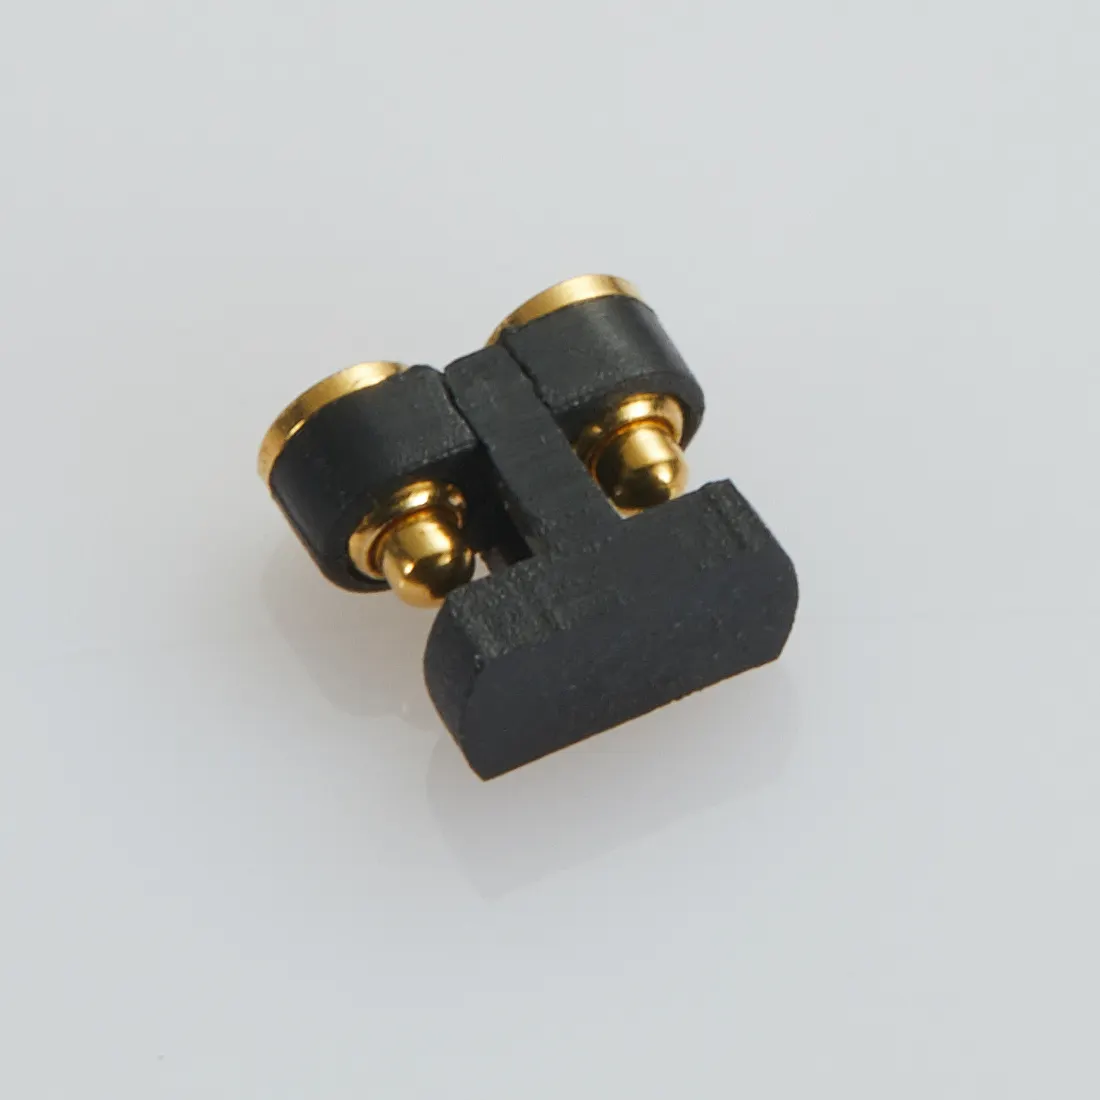 POGO PIN 스프링 핀 커넥터 제조업체 맞춤형 도매 고 전류 Pogopin 배터리 커넥터 직립 골무